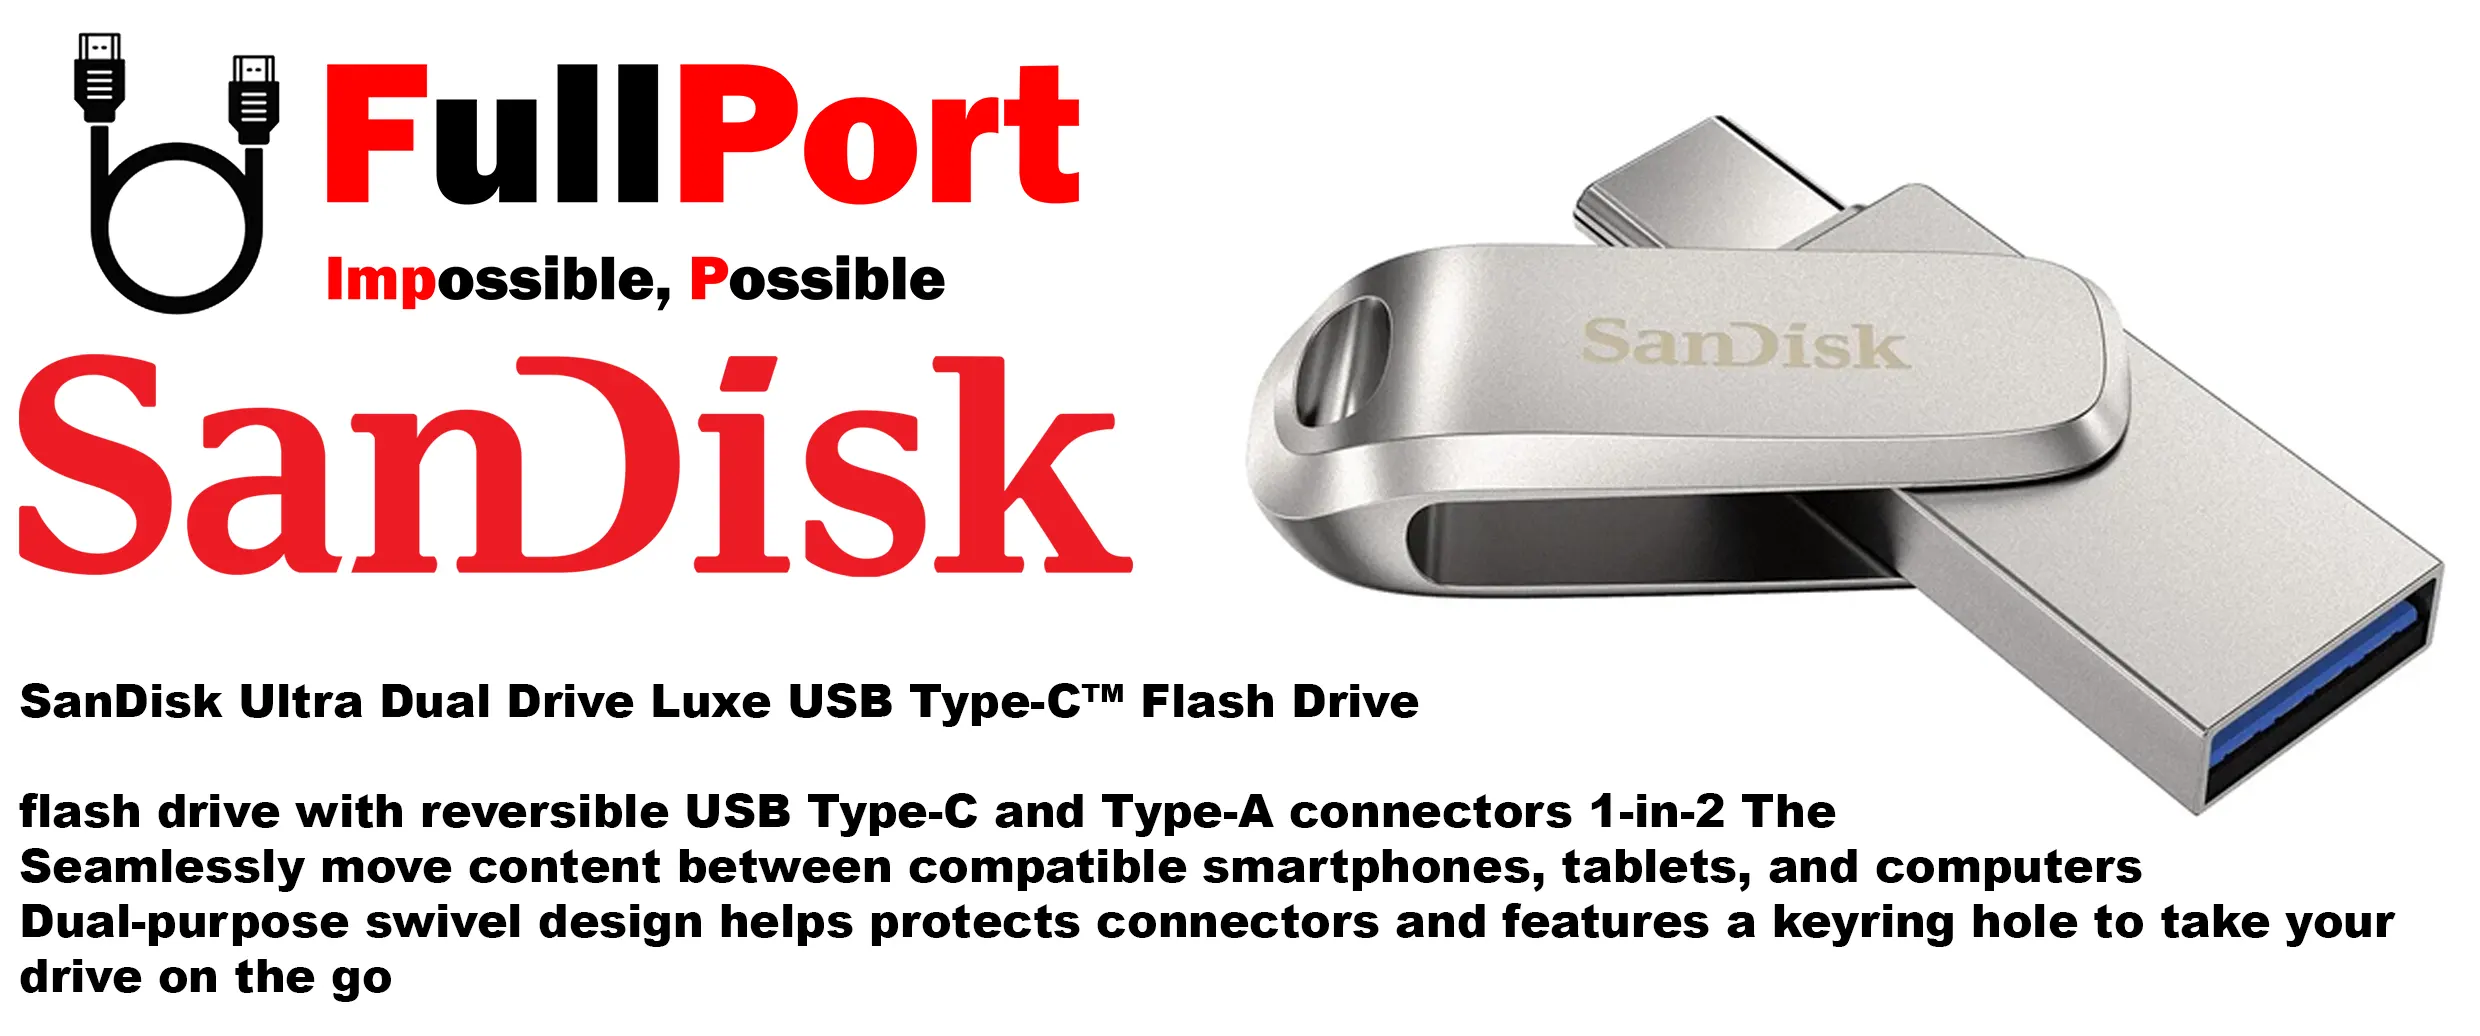 خرید اینترنتی فلش سن دیسک مدل Sandisk SDDDC4 Ultra Dual Drive Luxe OTG 2 In 1 Type C USB3.2 گیگابایت از فروشگاه اینترنتی فول پورت